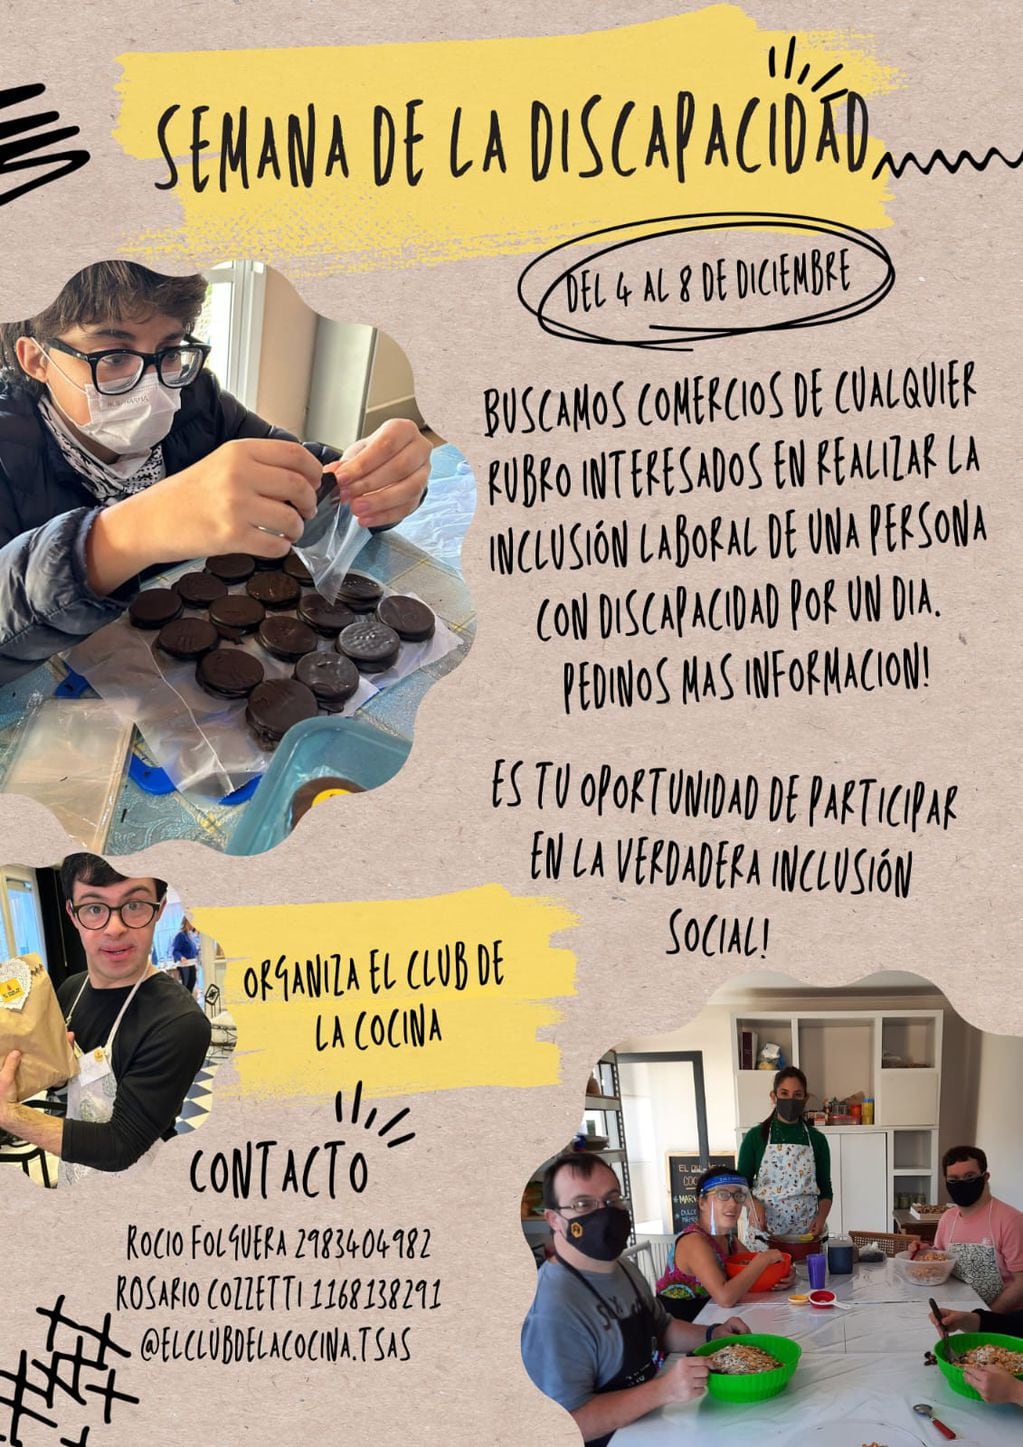 Semana de la discapacidad en Tres Arroyos del Club de la Cocina